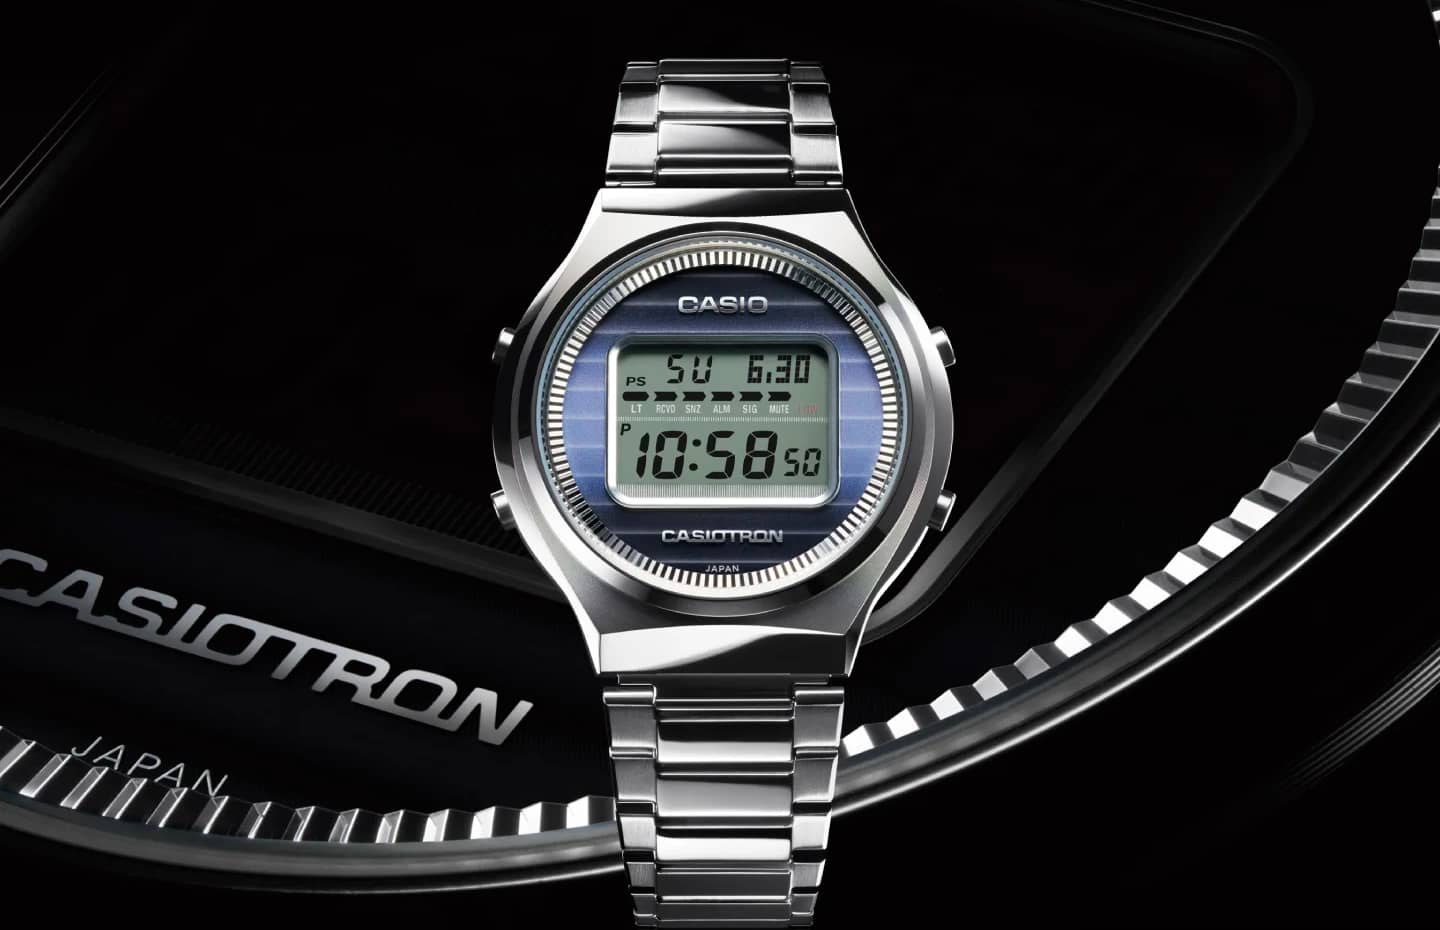 Представлены коллекционные смарт-часы Casio Casiotron 50th Anniversary TRN50-2A